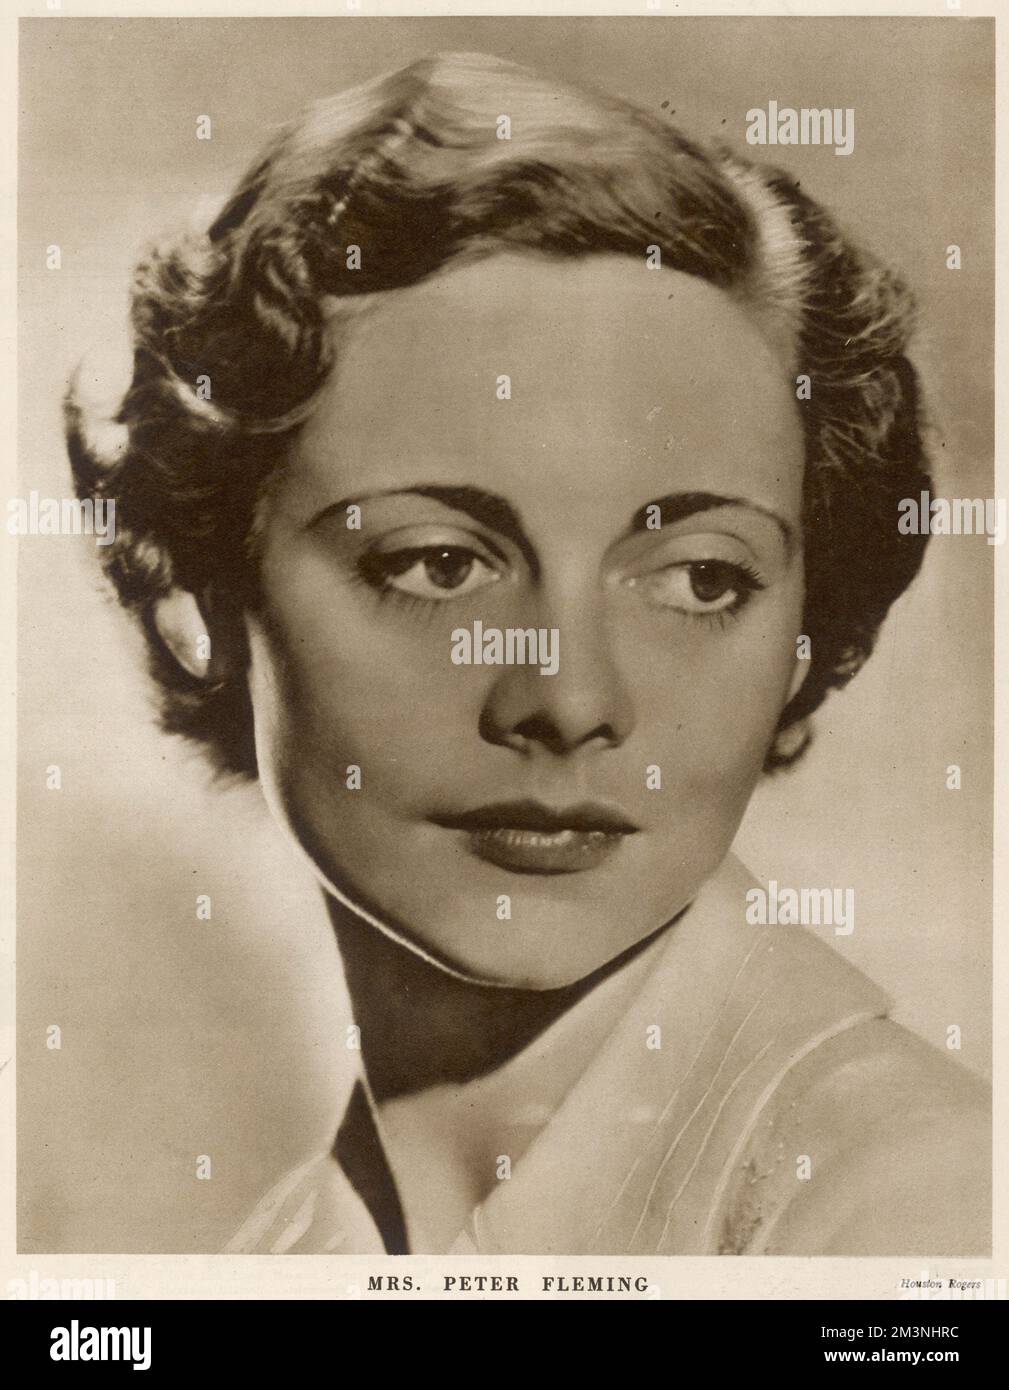 Celia Johnson (1908 - 1982), attrice britannica, meglio conosciuta per il suo ruolo nel 'breve incontro' illustrato nel Bystander poco dopo il suo matrimonio con lo scrittore, Peter Fleming. Data: 1935 Foto Stock